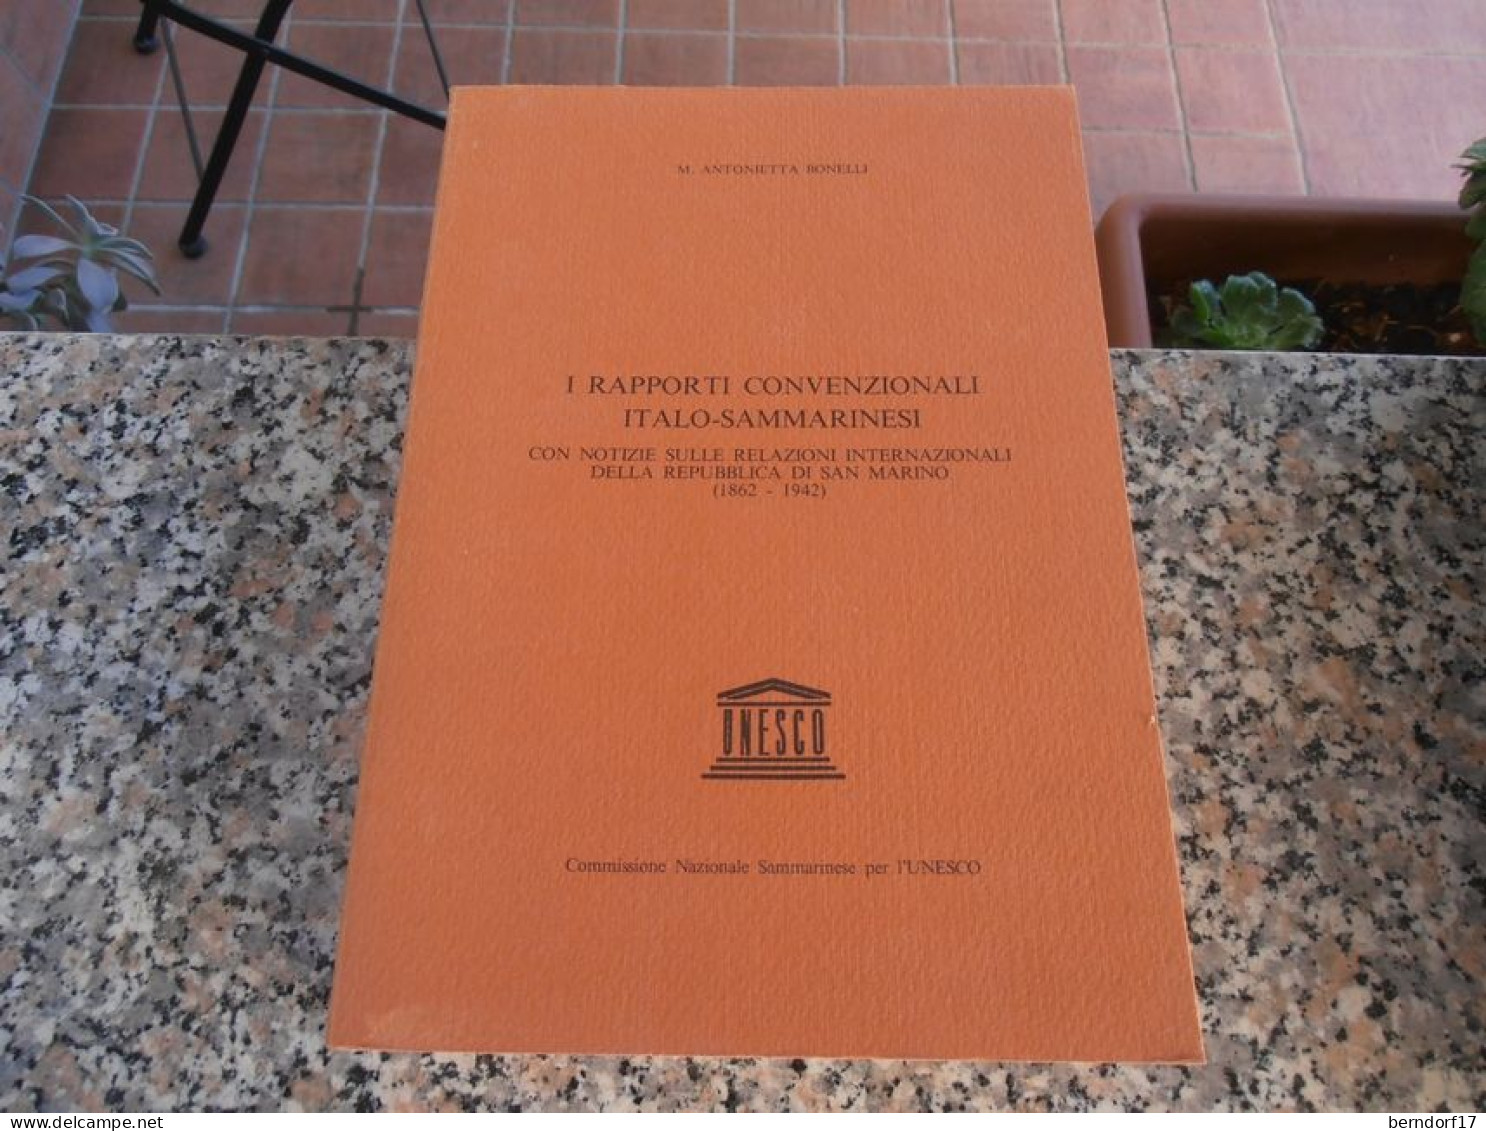 I RAPPORTI CONVENZIONALI ITALO-SAMMARINESI - M. ANTONIETTA BONELLI - Society, Politics & Economy